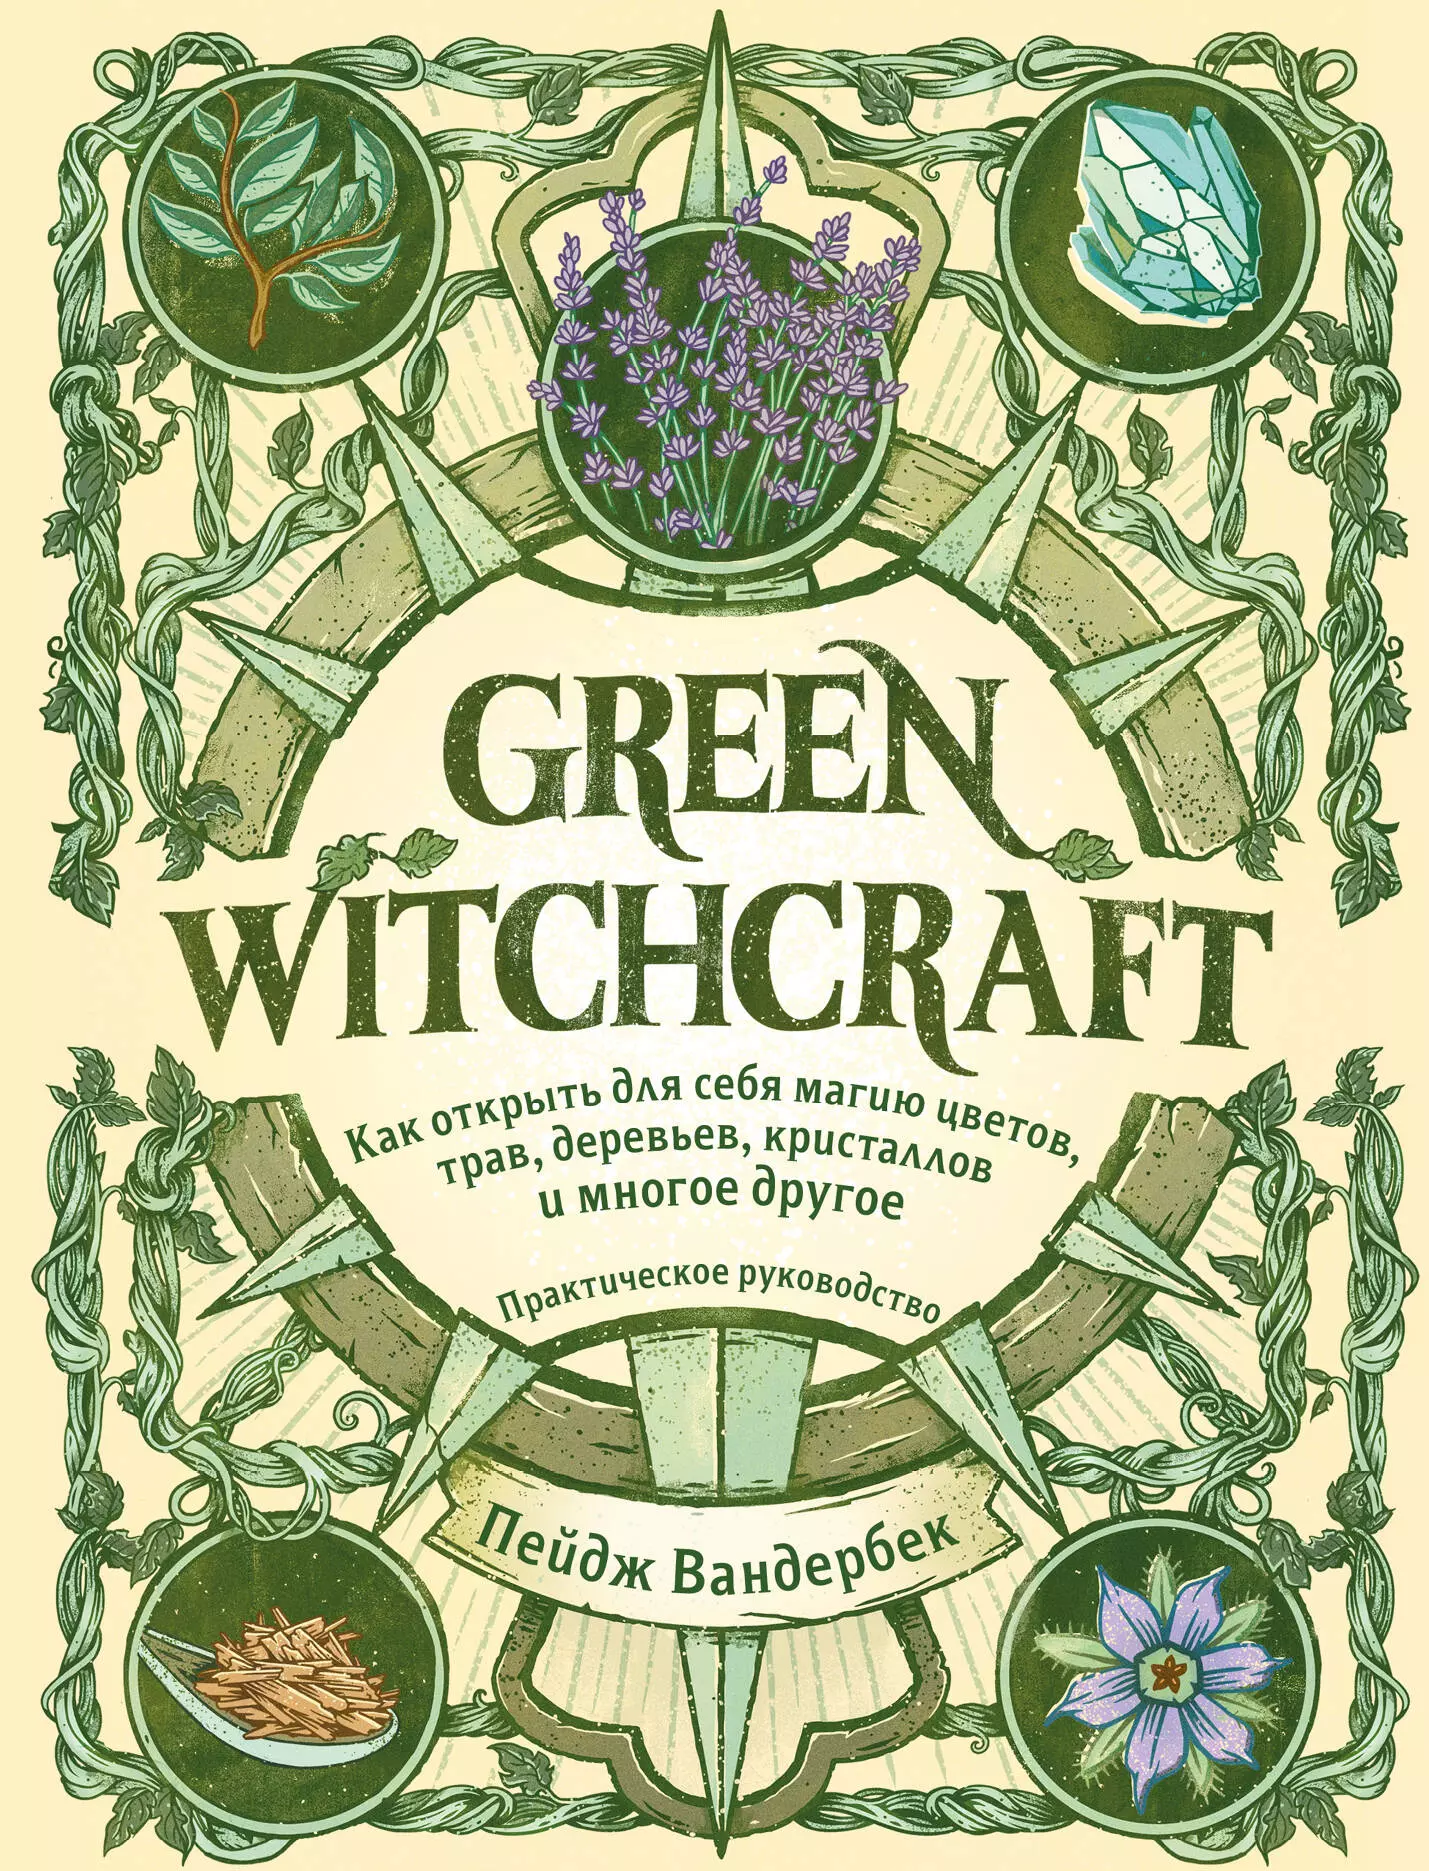 пейдж вандербек green witchcraft практическое руководство Green Witchcraft. Как открыть для себя магию цветов, трав, деревьев, кристаллов и многое другое. Практическое руководство